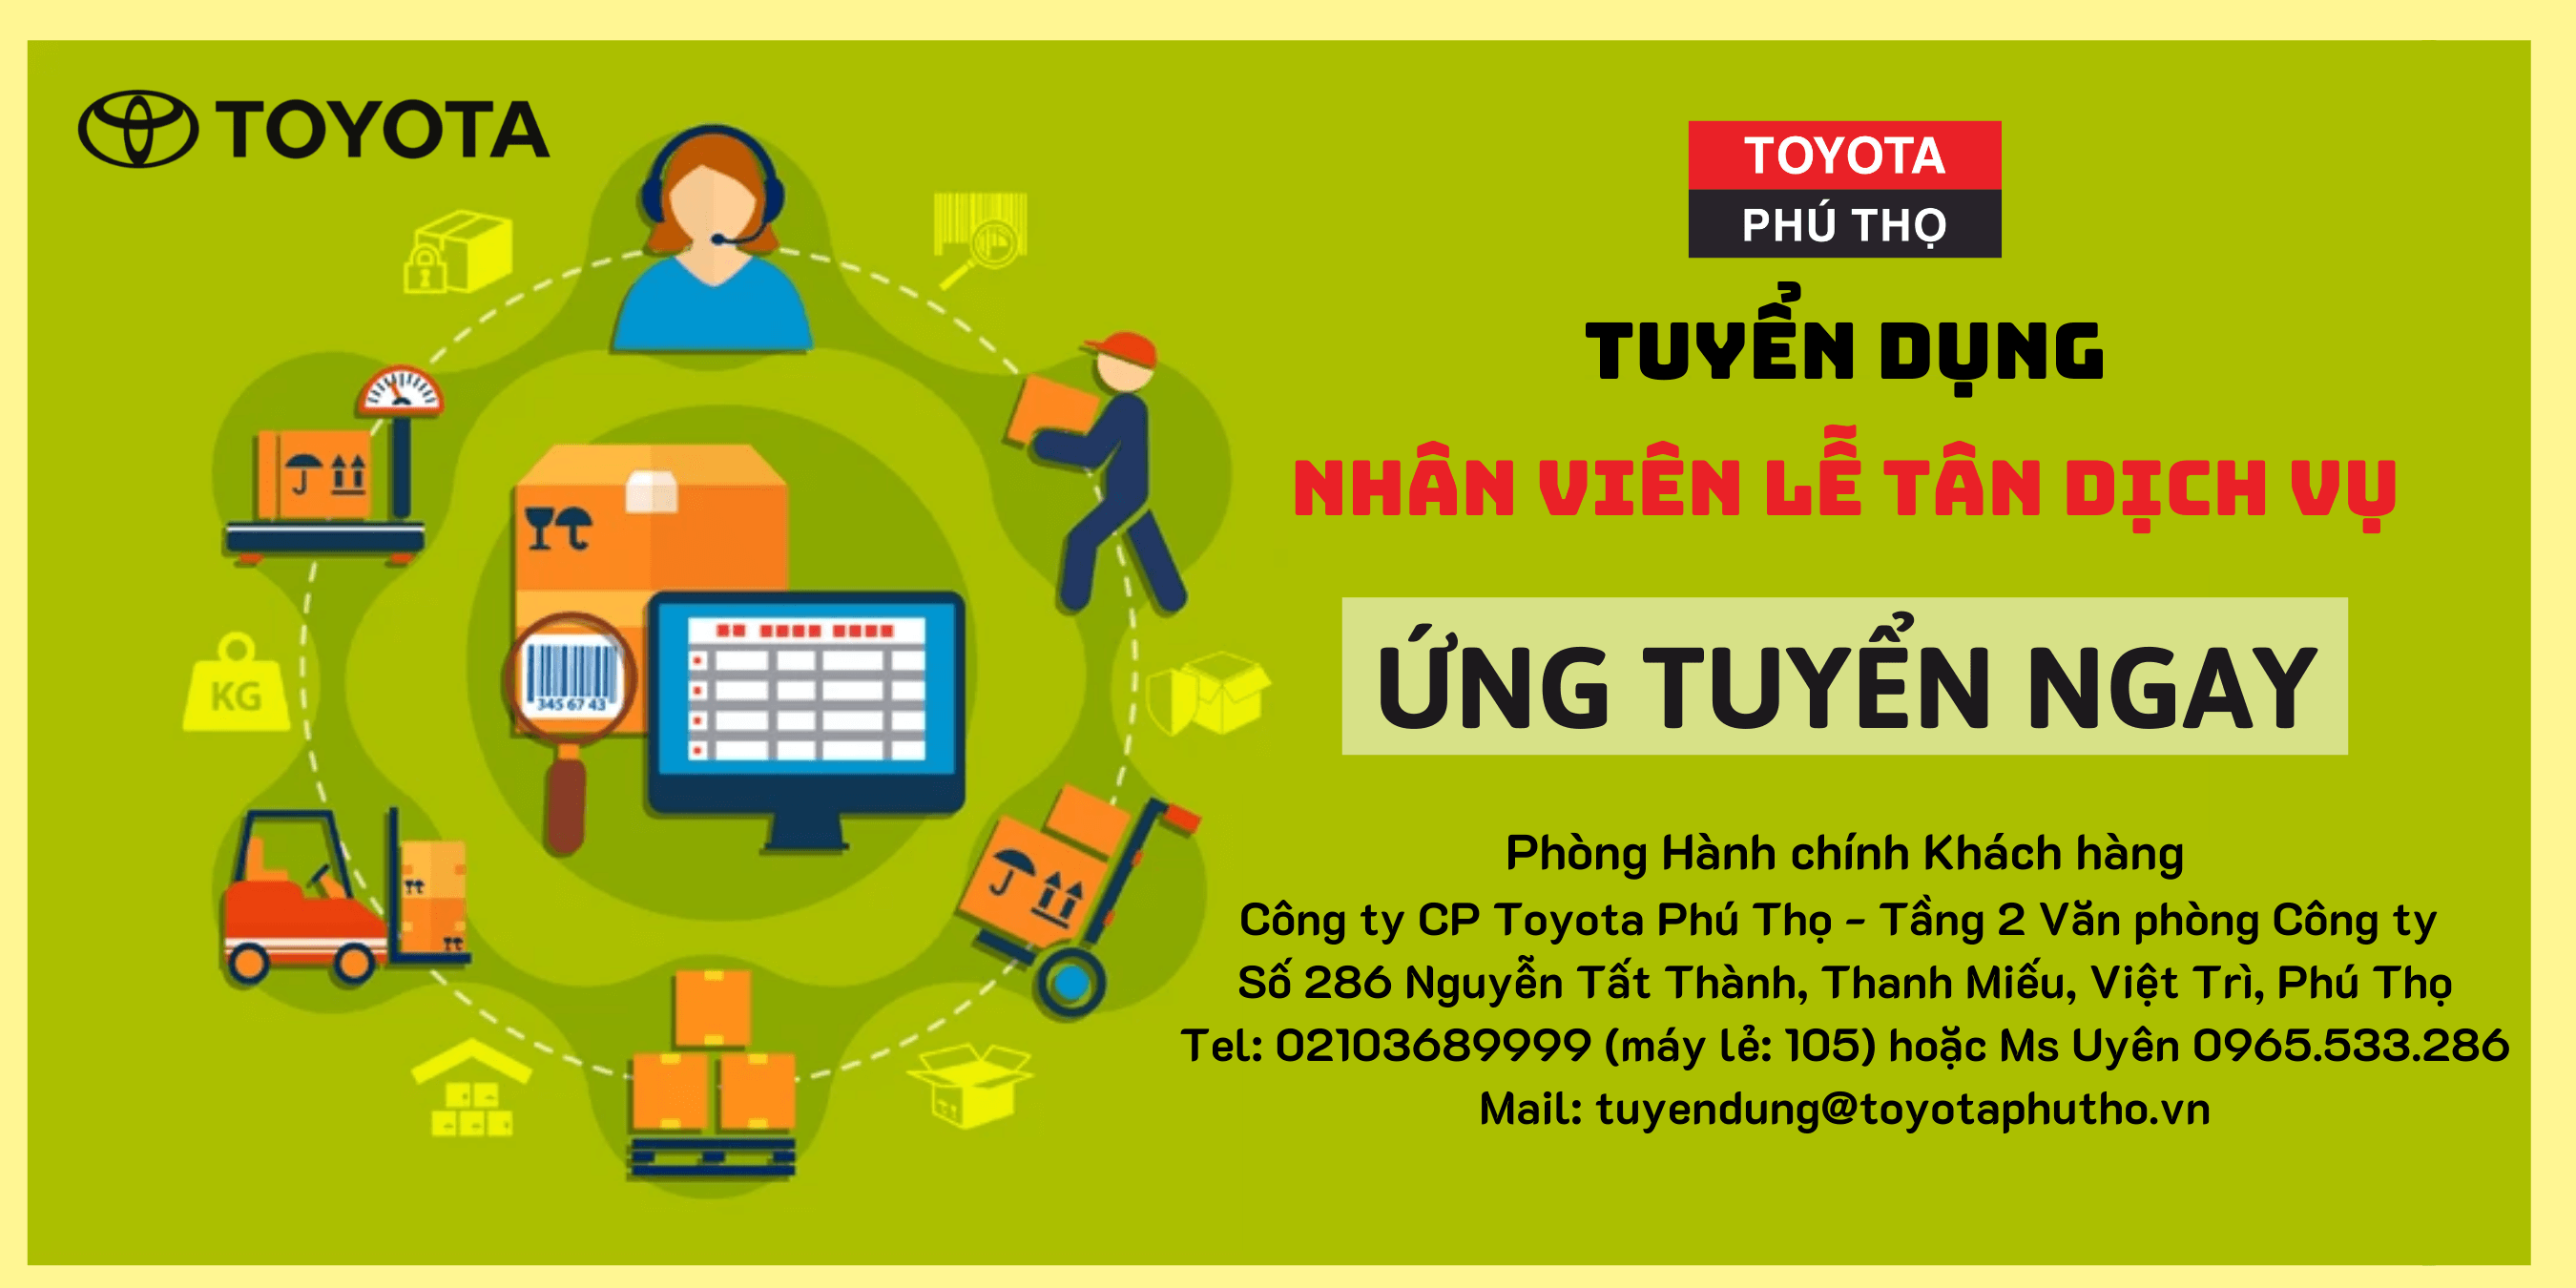 td ltdv - Toyota Phú Thọ